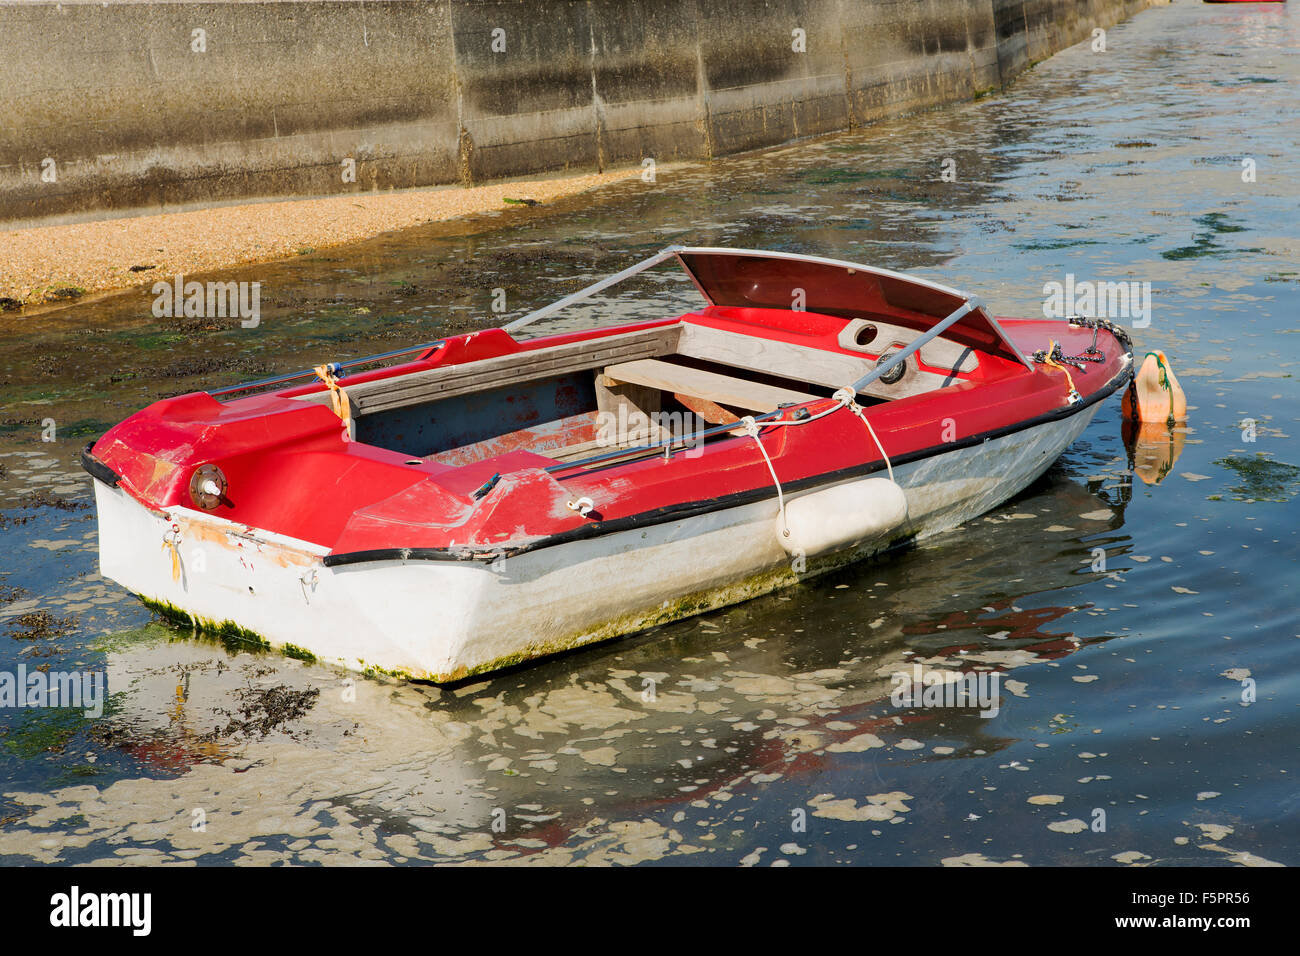 Sad suchen Schnellboot, klar etwas renovierungsbedürftig. Rote und weiße Boot nur knapp über Wasser im trüben Wasser Stockfoto